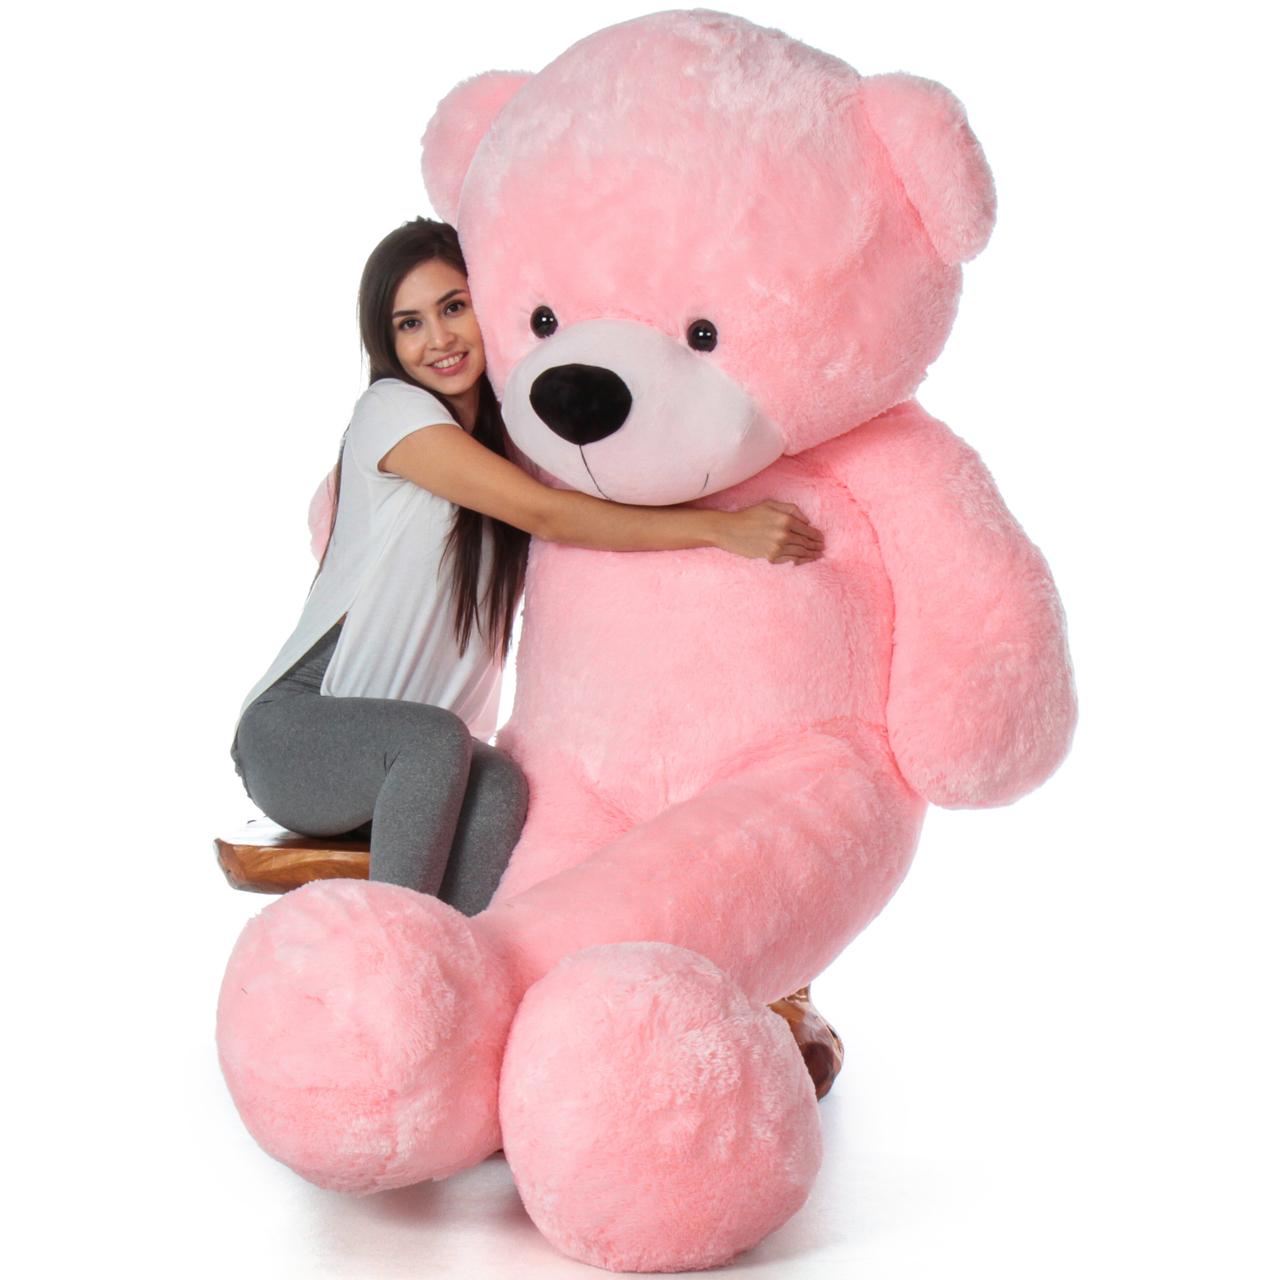 giant sized teddy bear